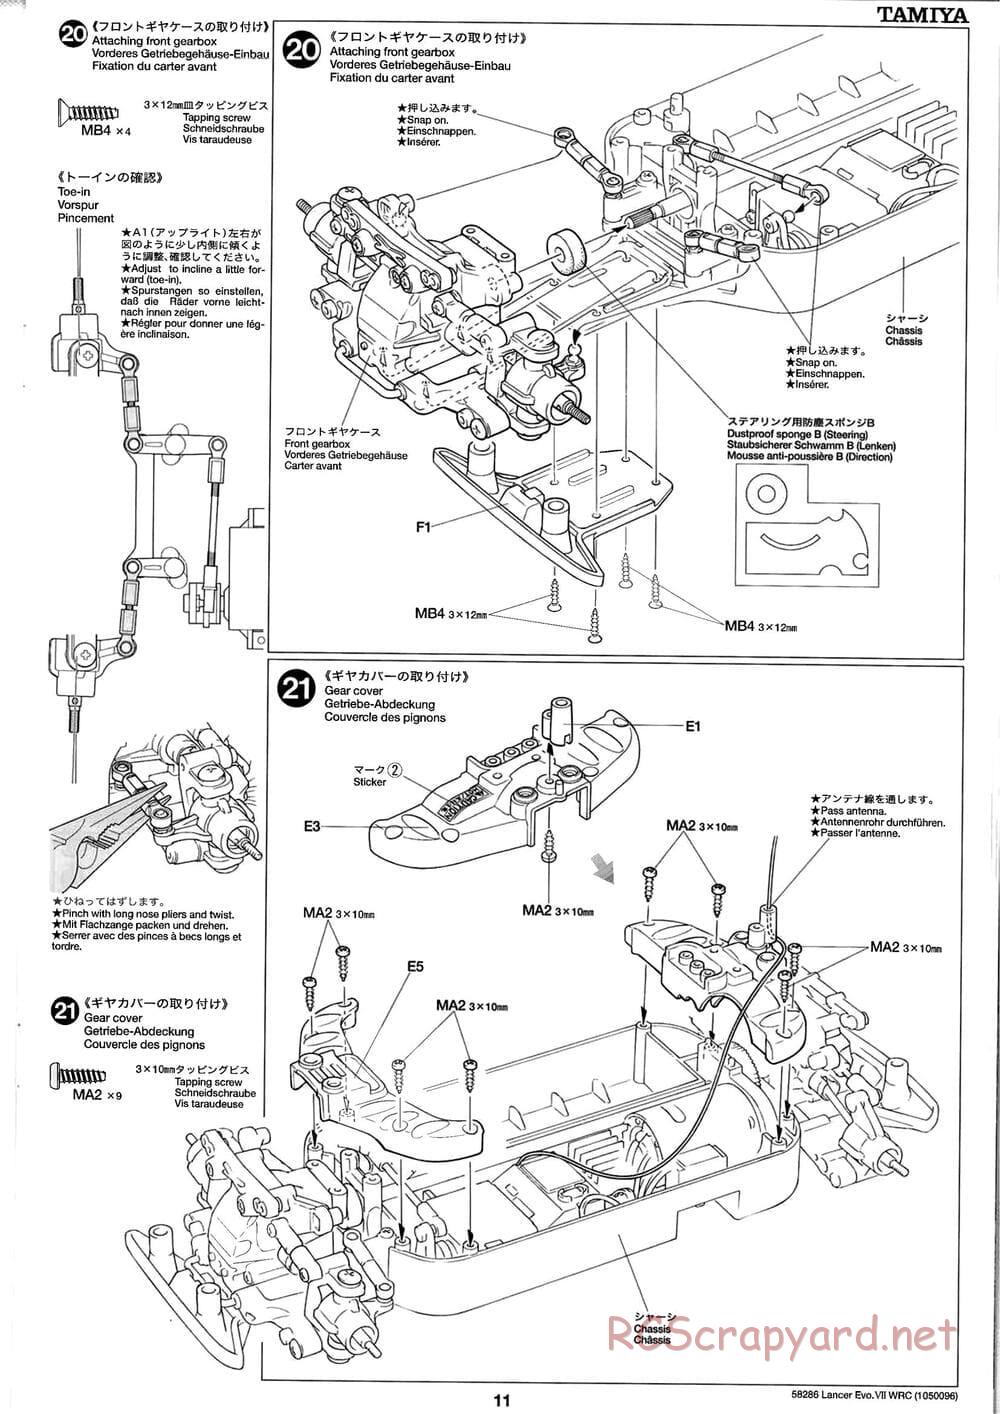 Tamiya - Mitsubishi Lancer Evolution VII WRC - TB-01 Chassis - Manual - Page 11